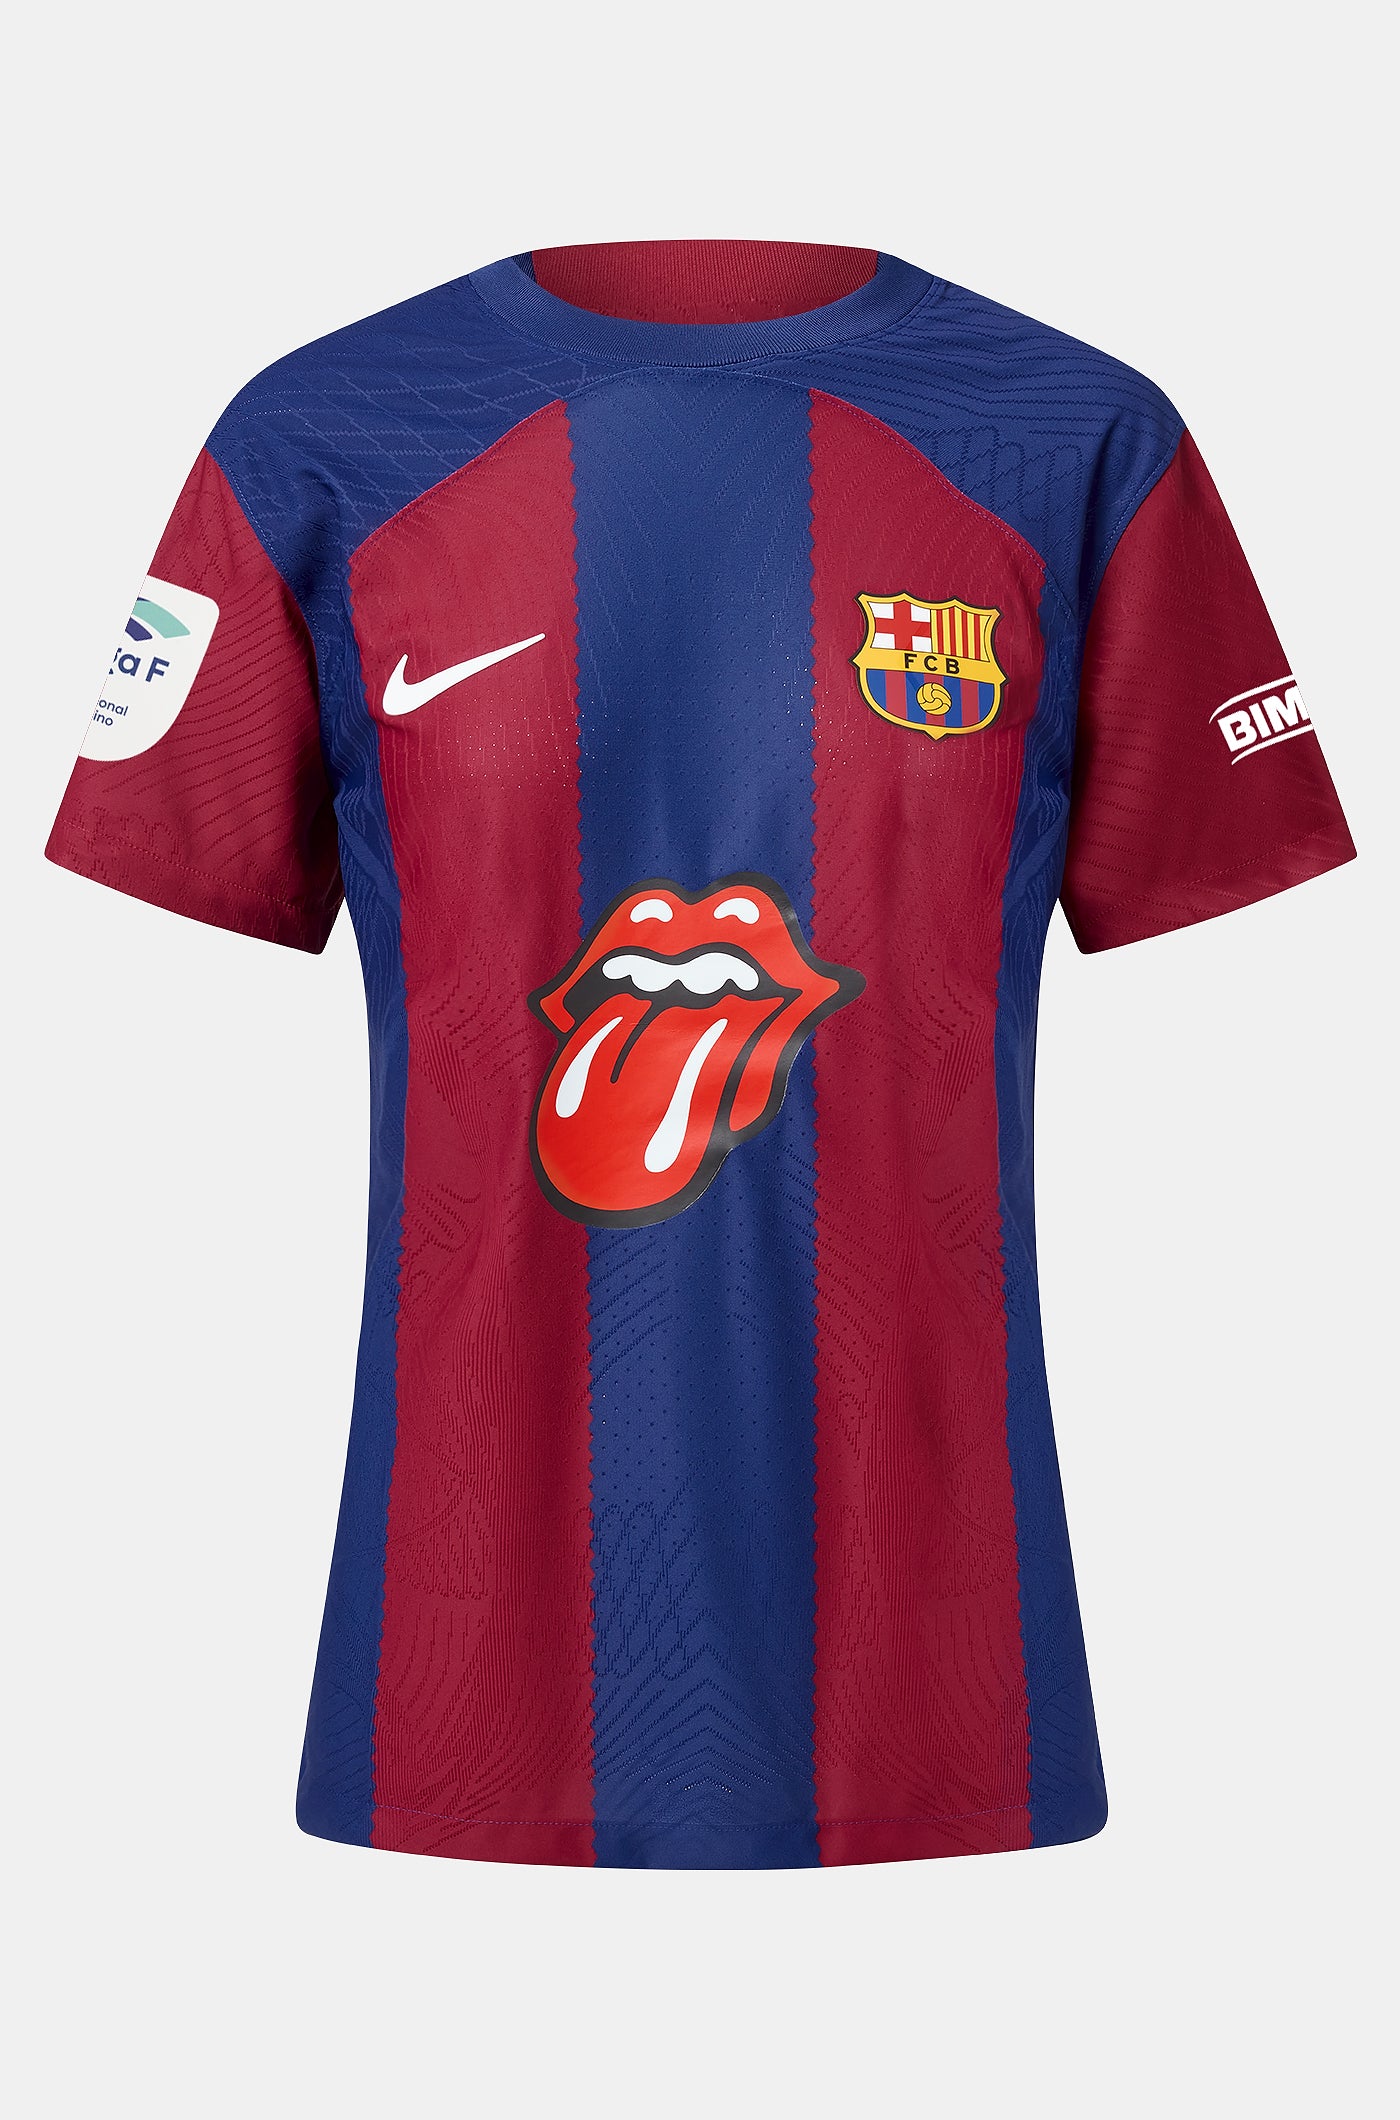 Limited-Edition-Trikot "Rolling Stones“. Heimtrikot der Damenmannschaft des FC Barcelona 23/24